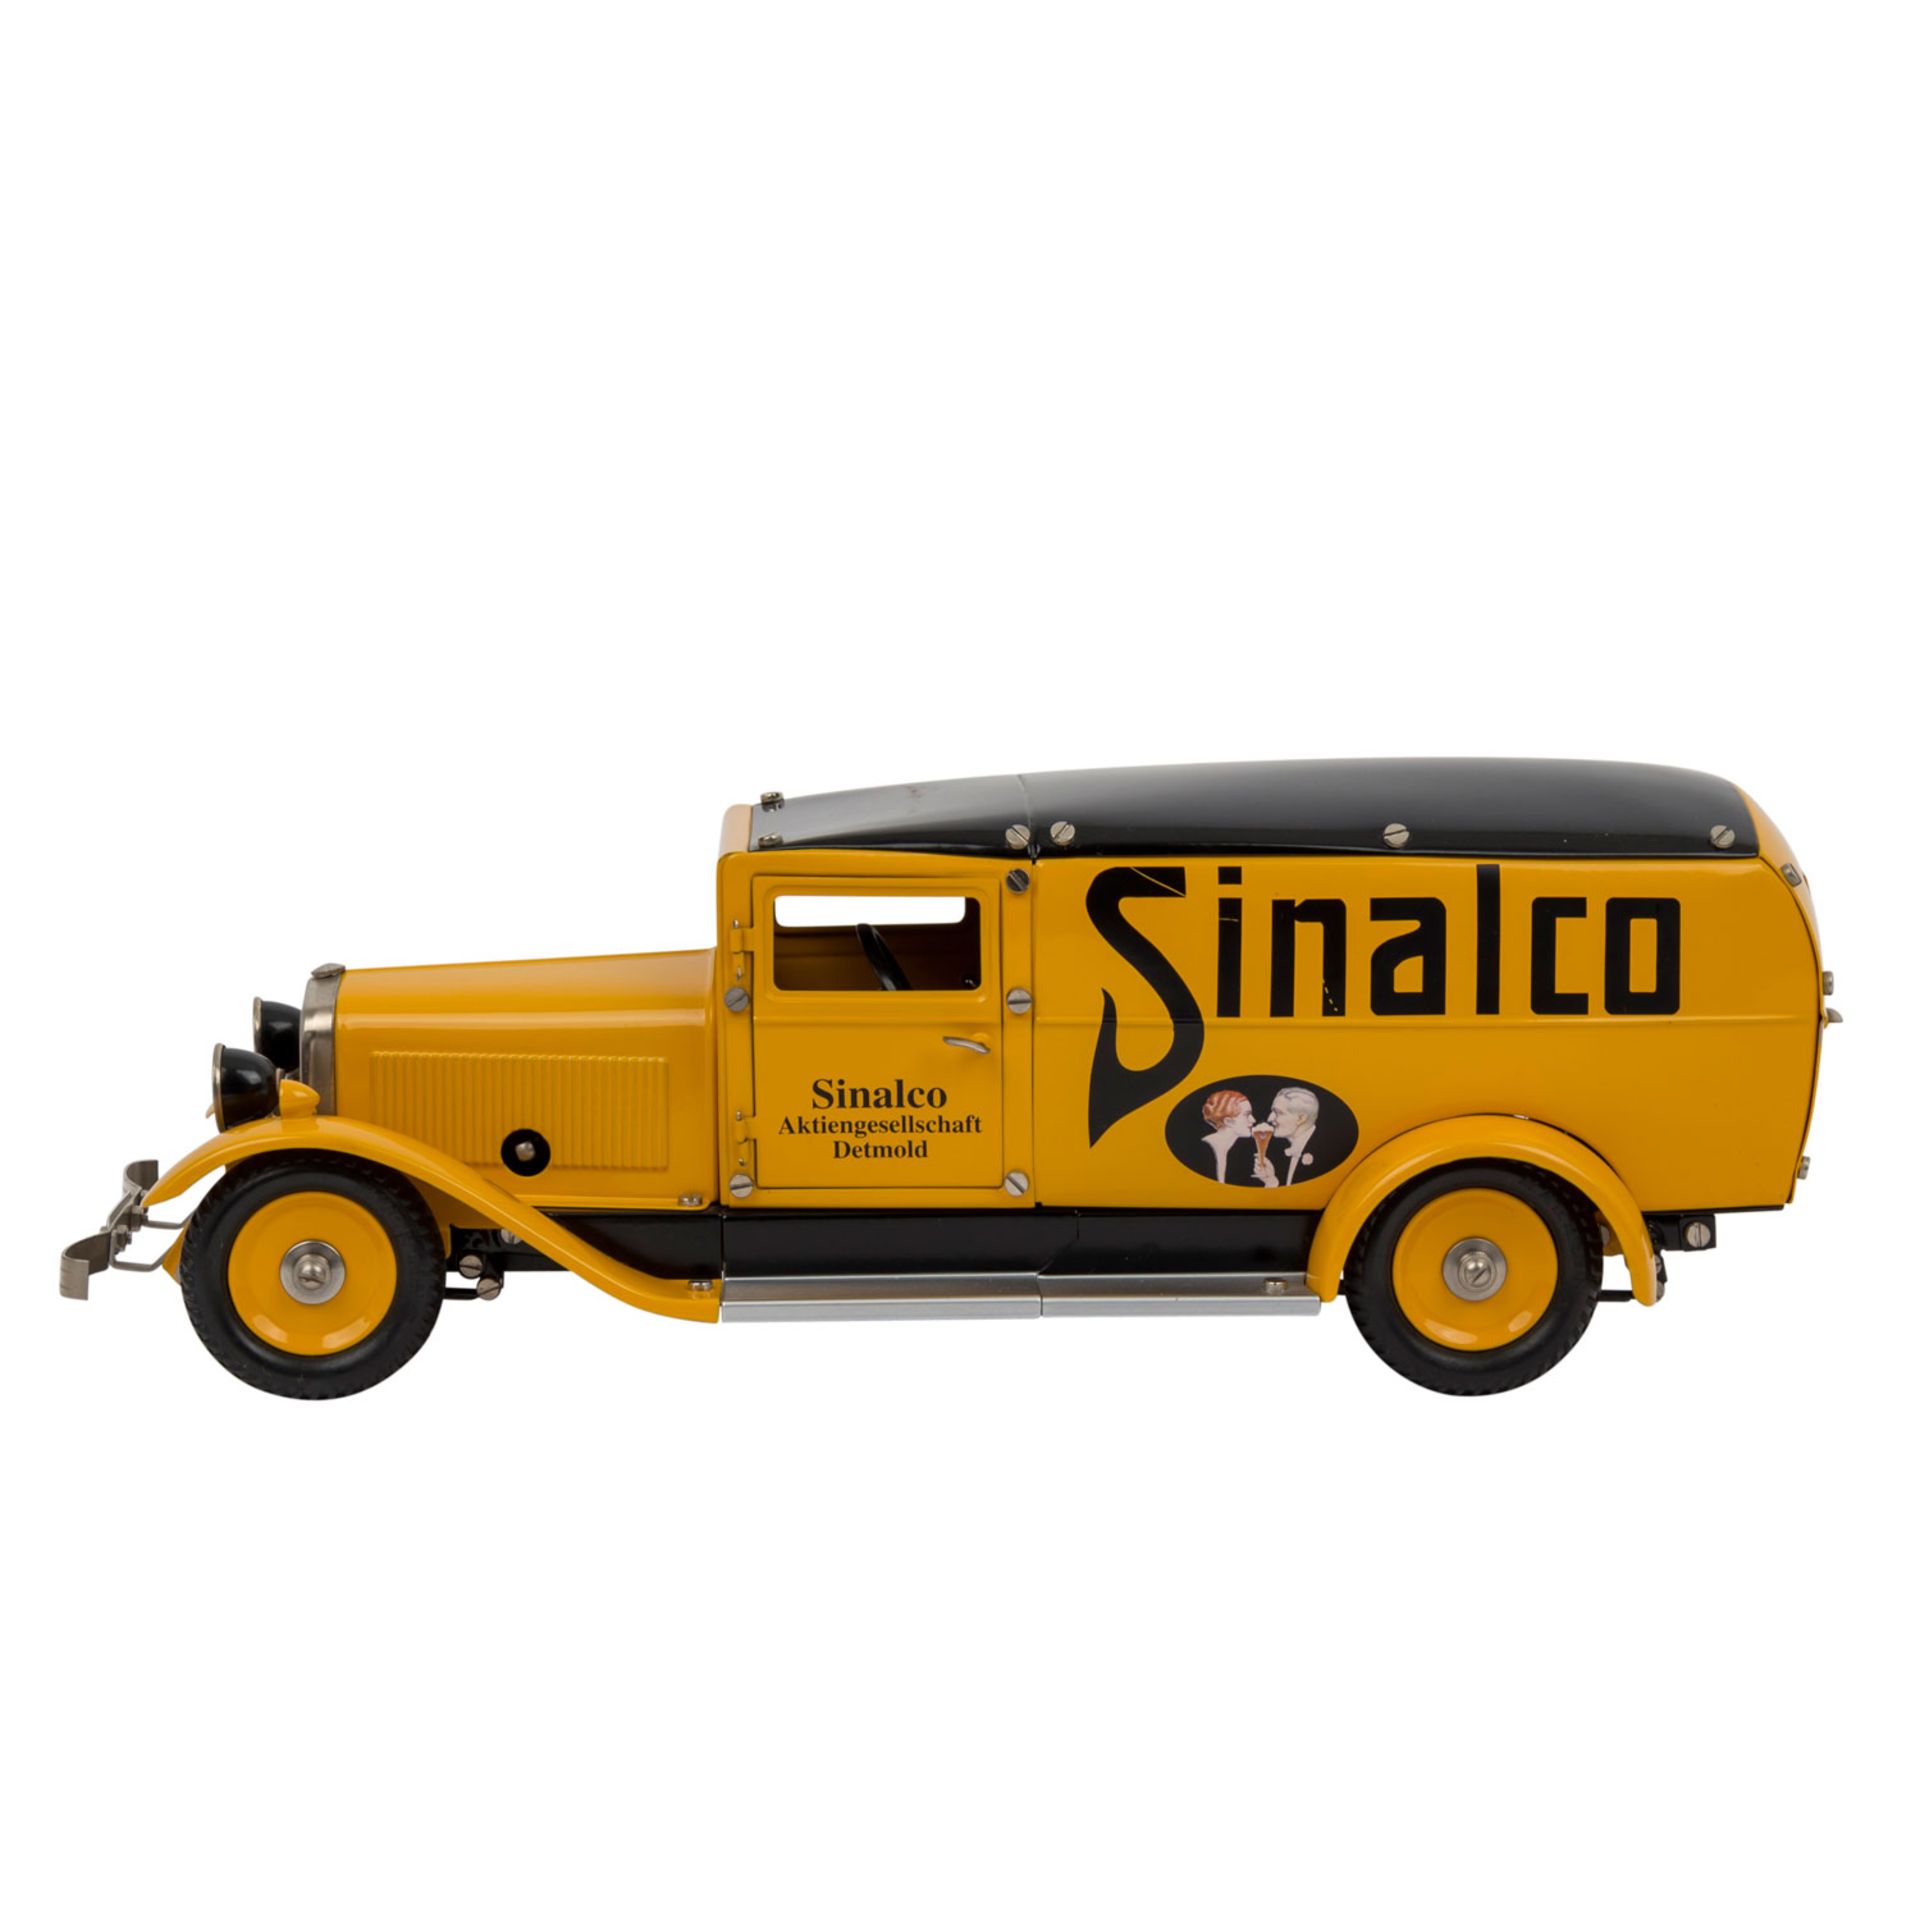 MÄRKLIN Lieferwagen "Sinalco" 19040,gelblackierte Blechausführung mit schwarzem Dach - Bild 2 aus 3